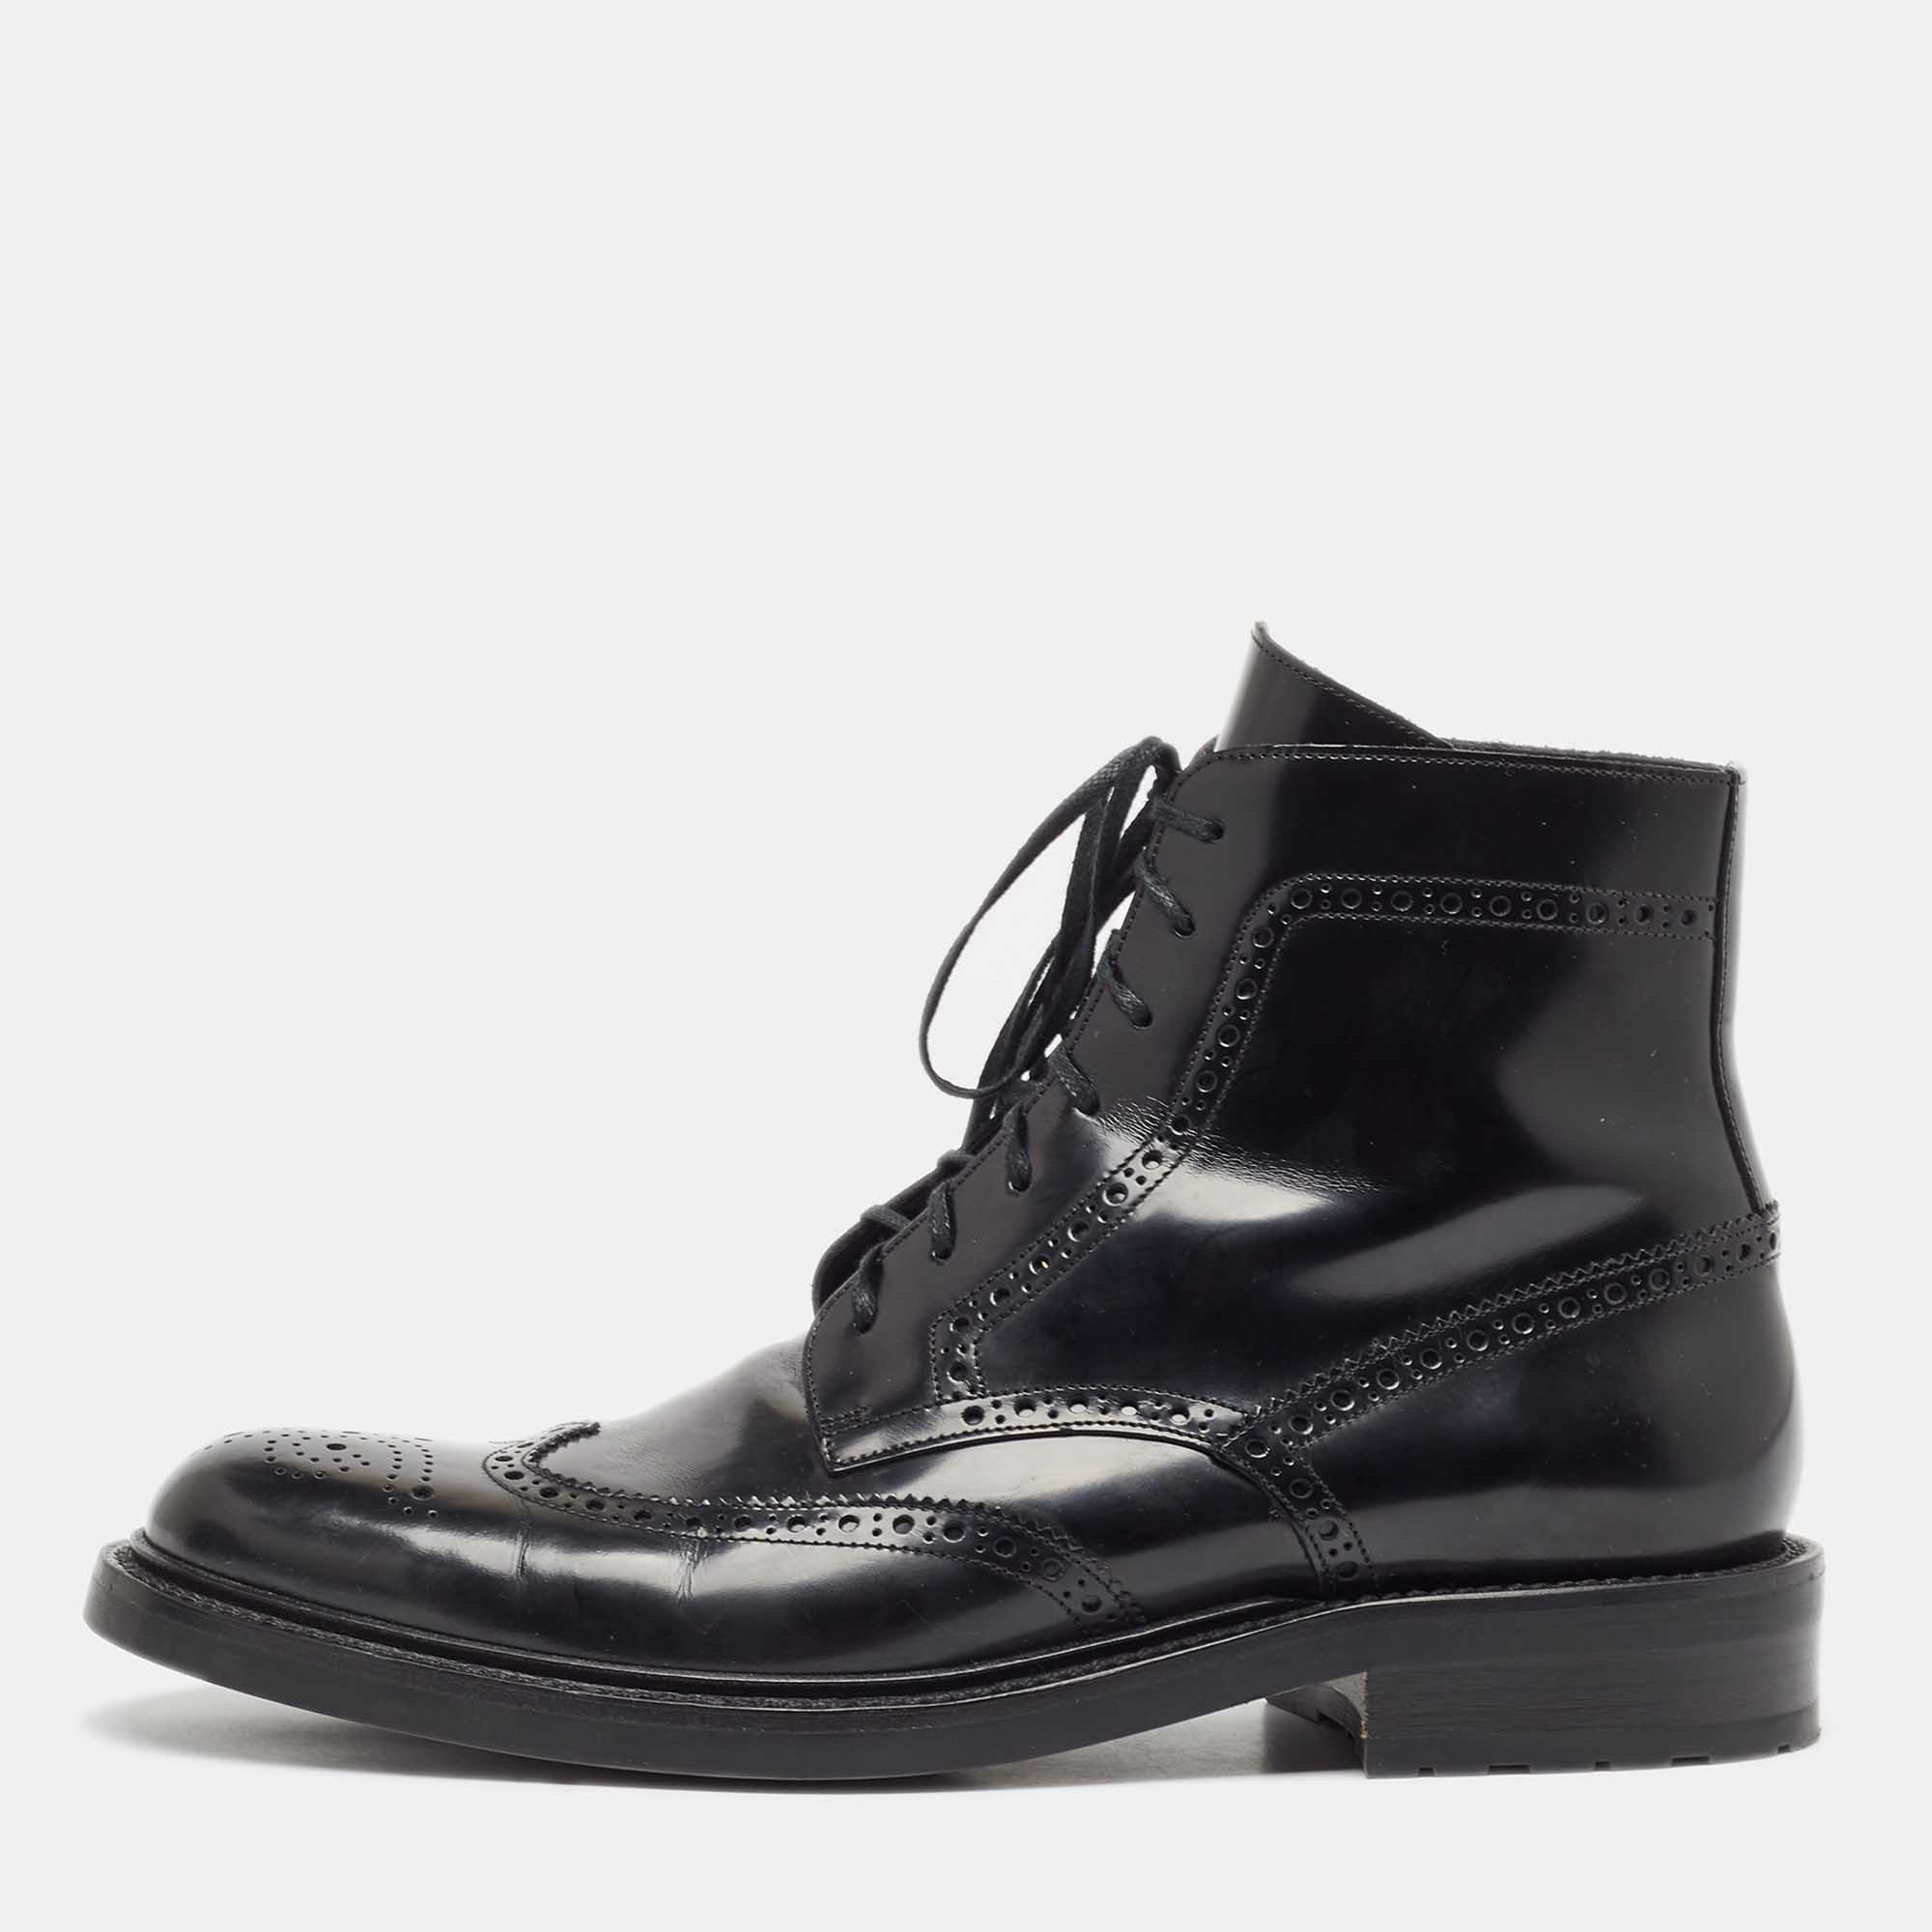 

Saint Laurent Black Brogue Leather Ankle Boots Size